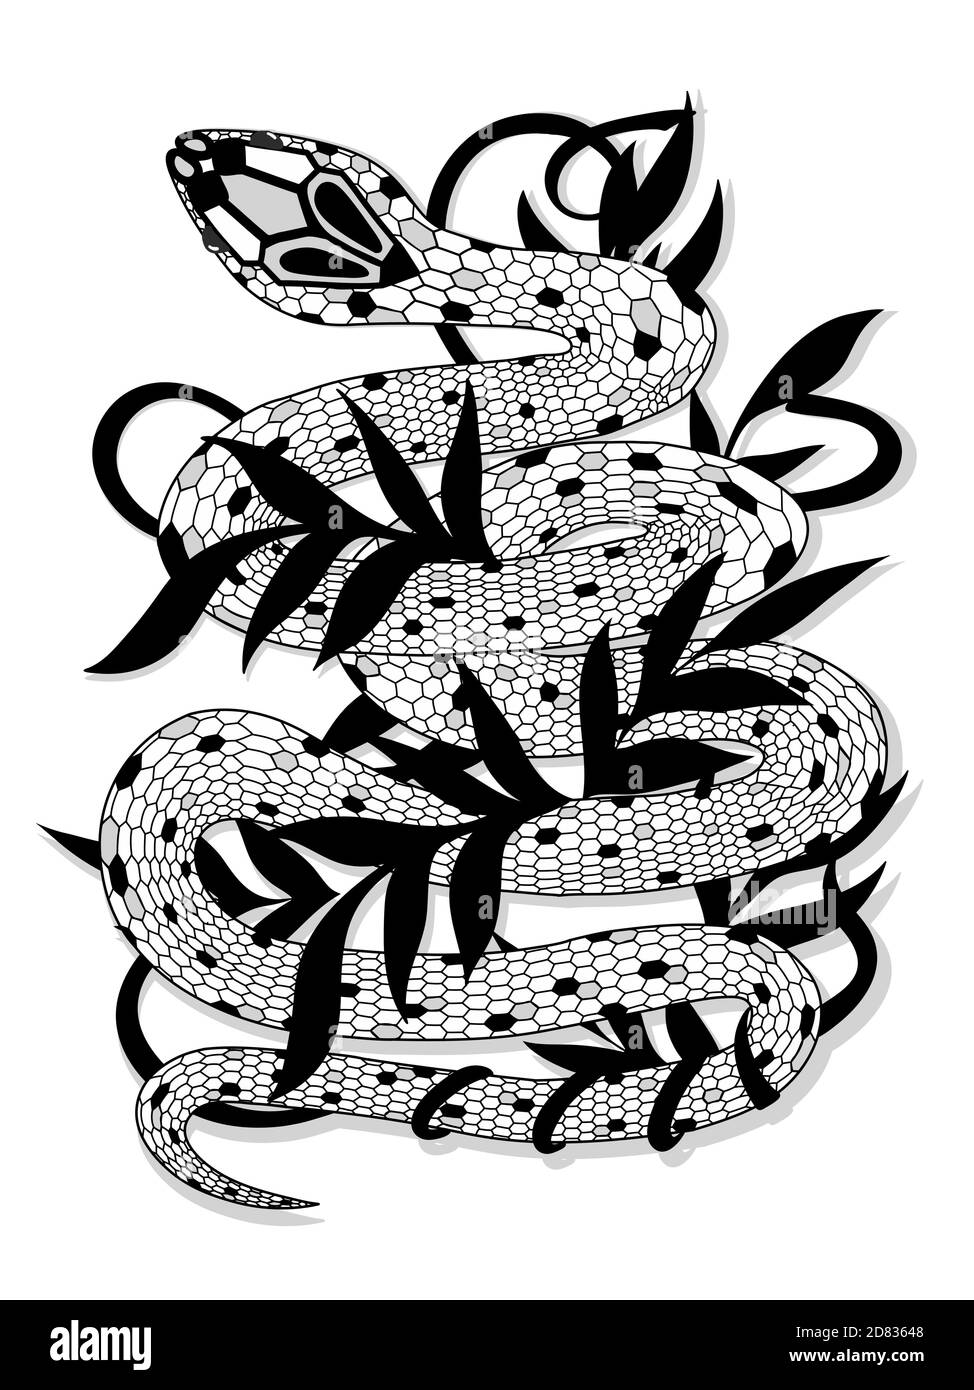 Serpent vintage dessiné à la main avec illustration de feuilles noires. Croquis graphique pour affiches, tatouage, vêtements, t-shirt Illustration de Vecteur